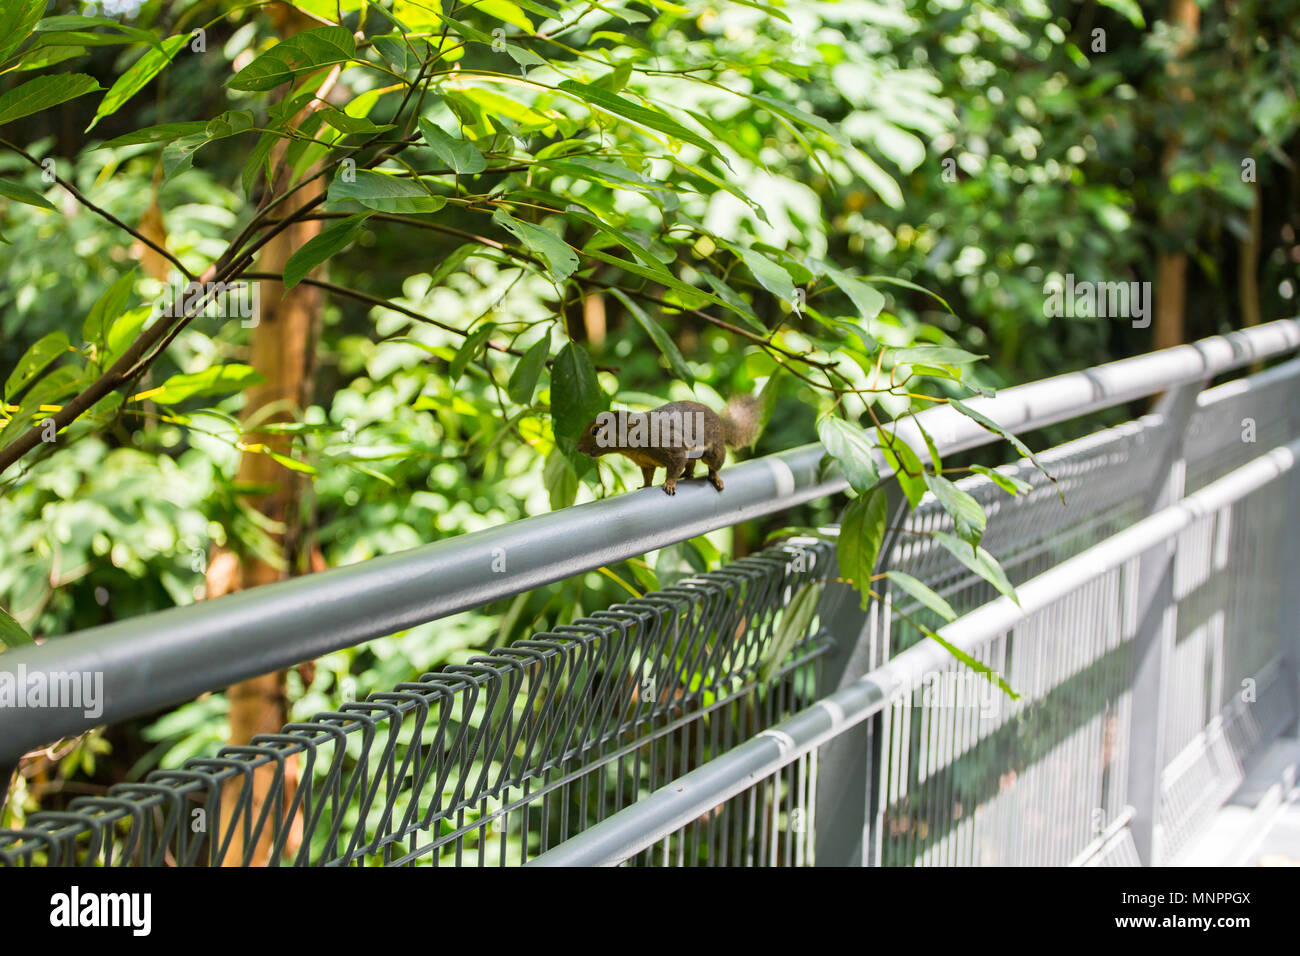 Uno scoiattolo di piantagione sul binario di guardia in cerca di cibo come noci, frutta, corteccia, insetti e piante specifiche per nutrirsi. Singapore. Foto Stock